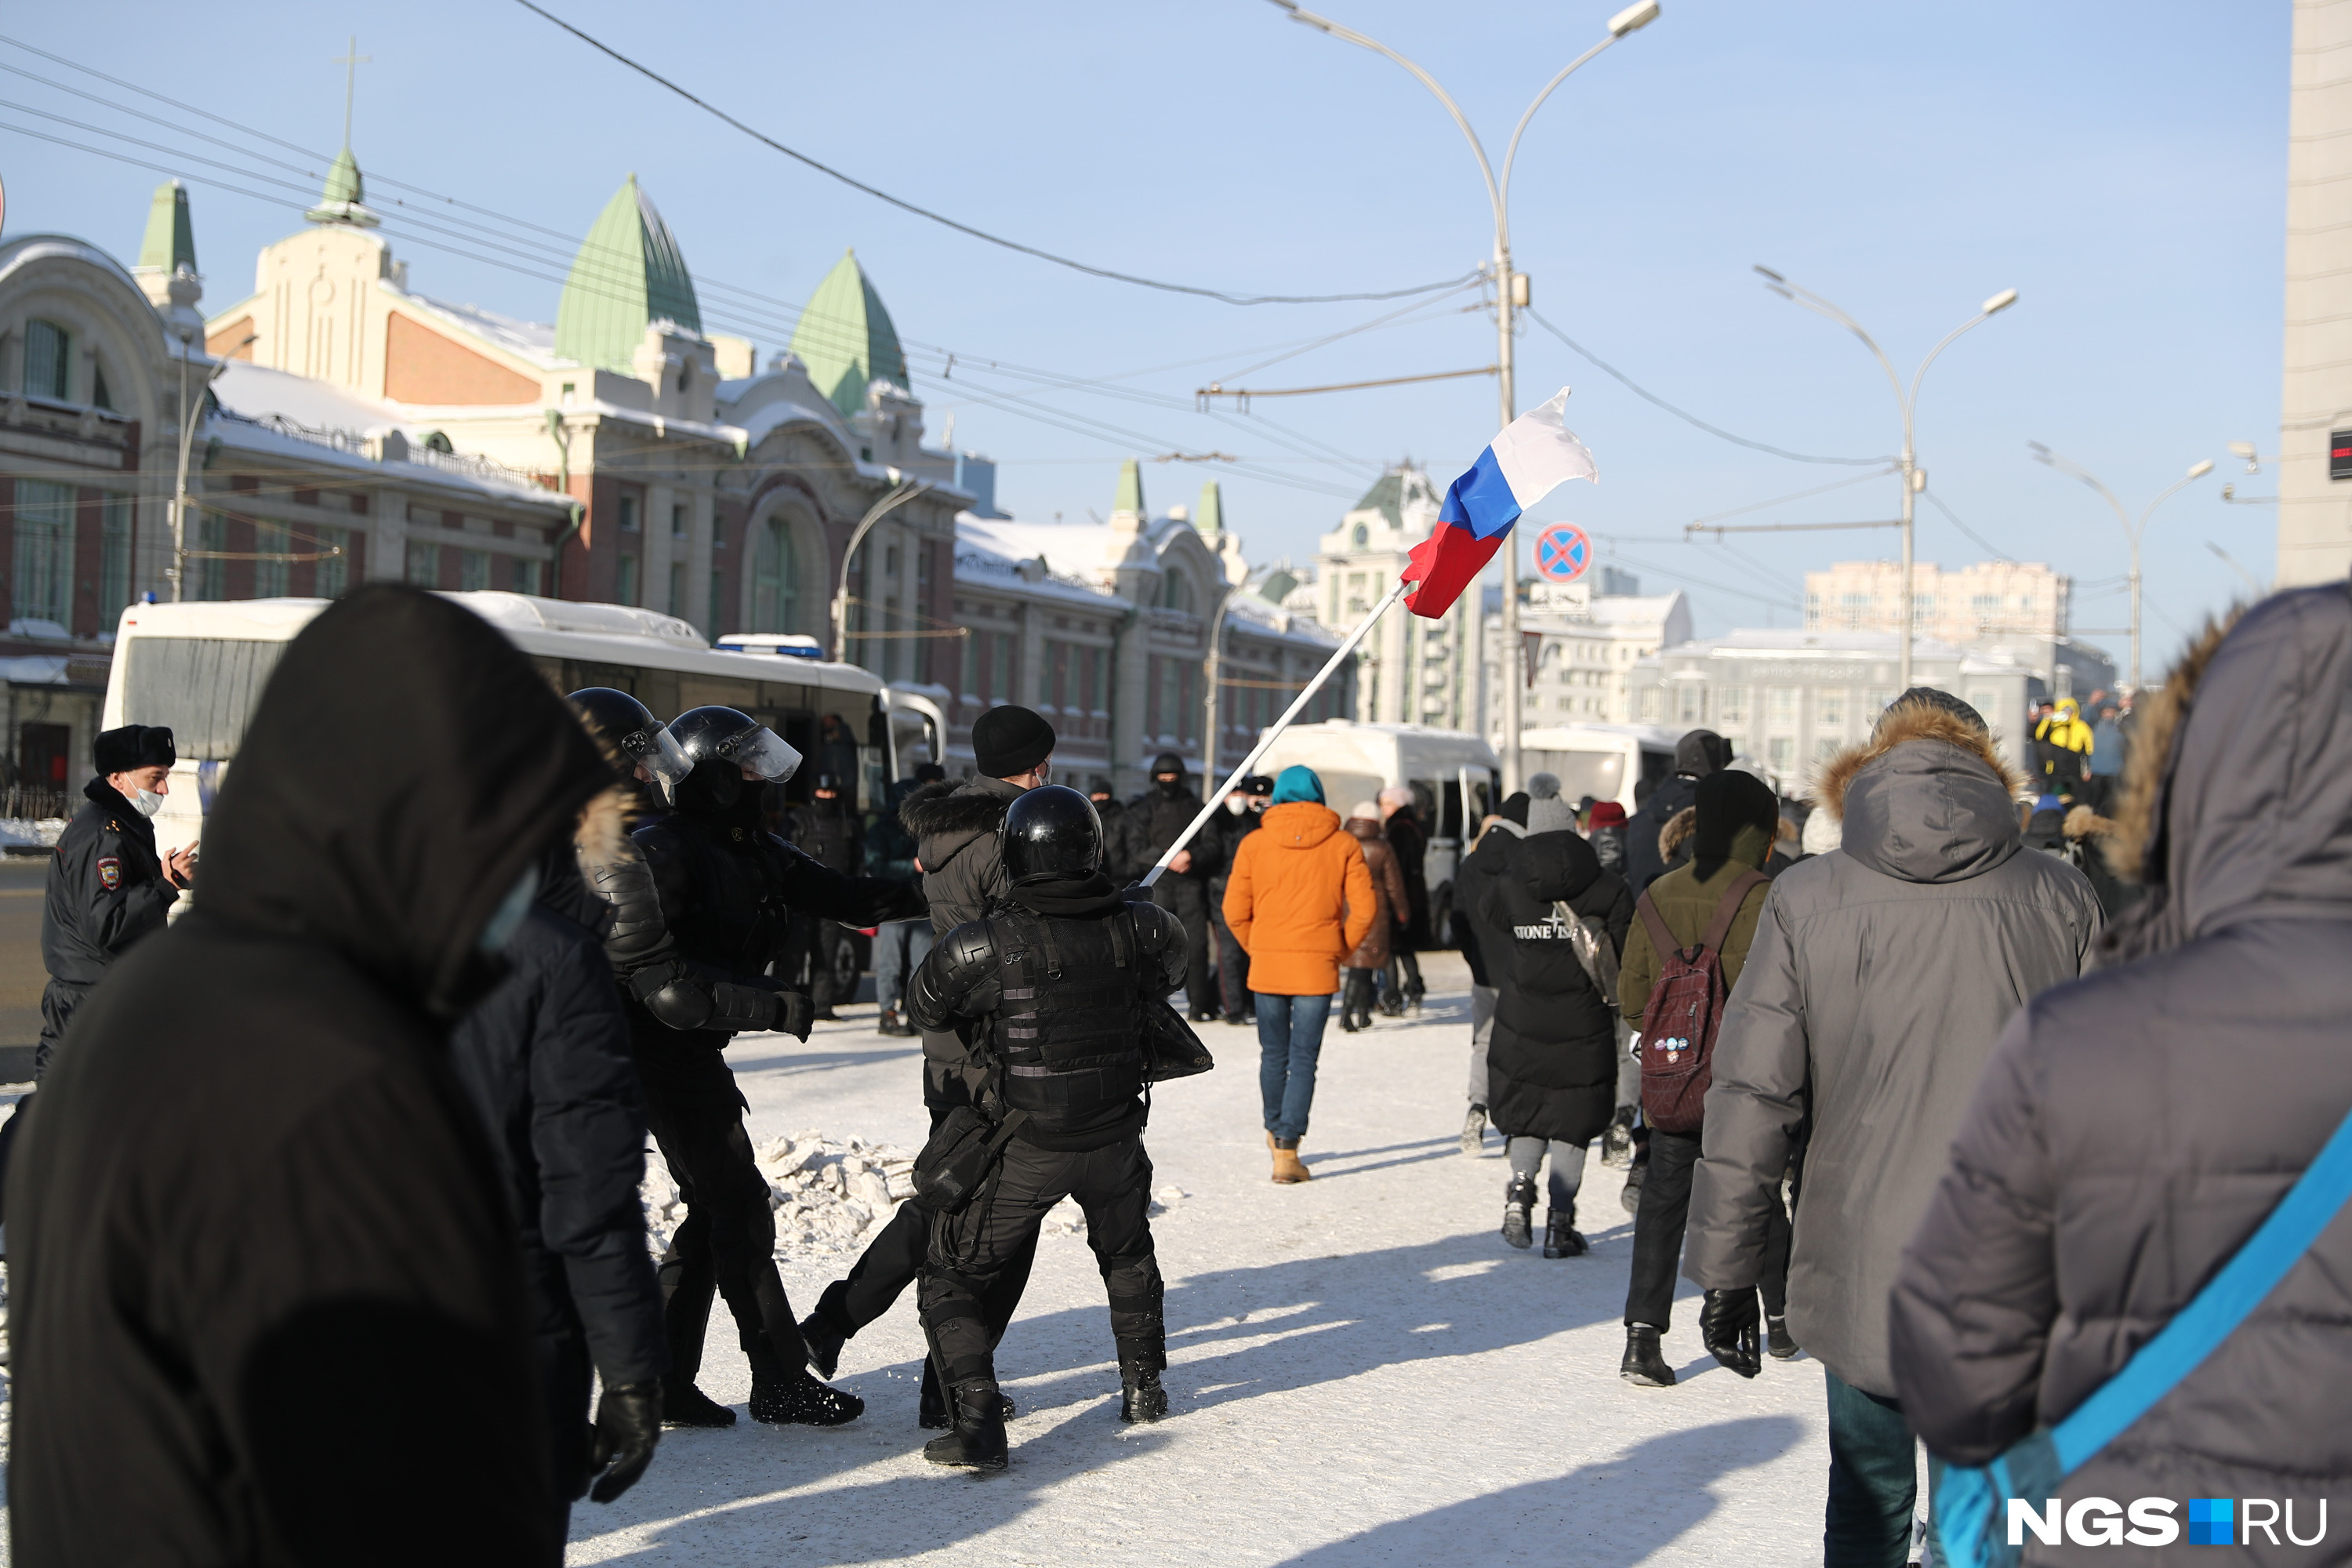 Напротив Первомайского сквера возле здания мэрии нескольких человек задержали, в том числе тех, кто достал российский флаг